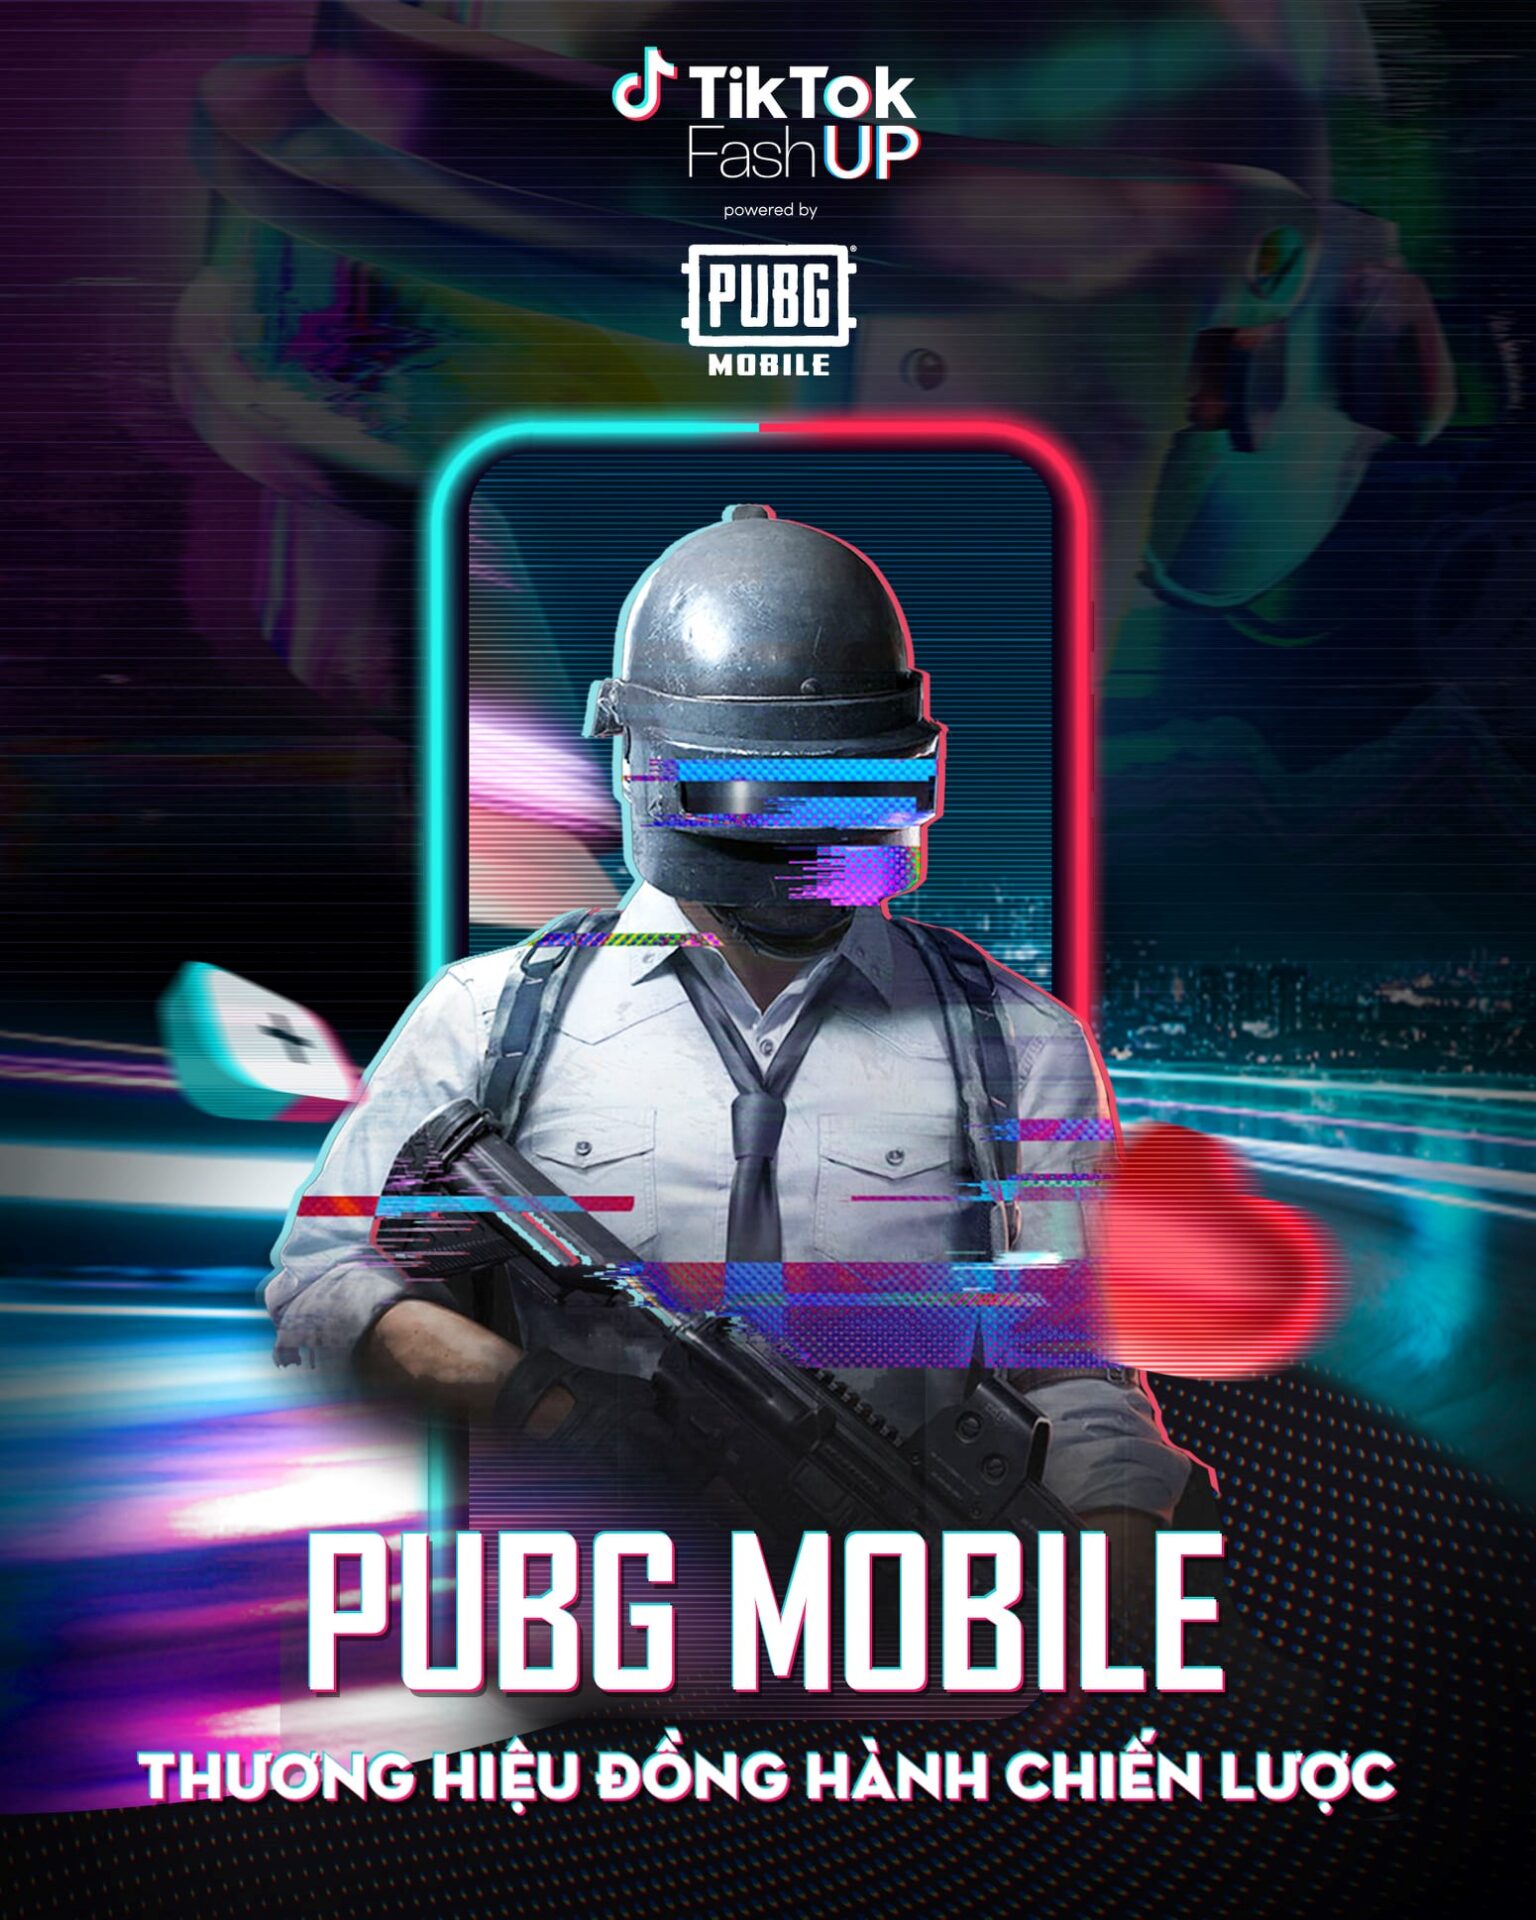 PUBG Mobile kết hợp TikTok, mang đến sân chơi thú vị cho game thủ